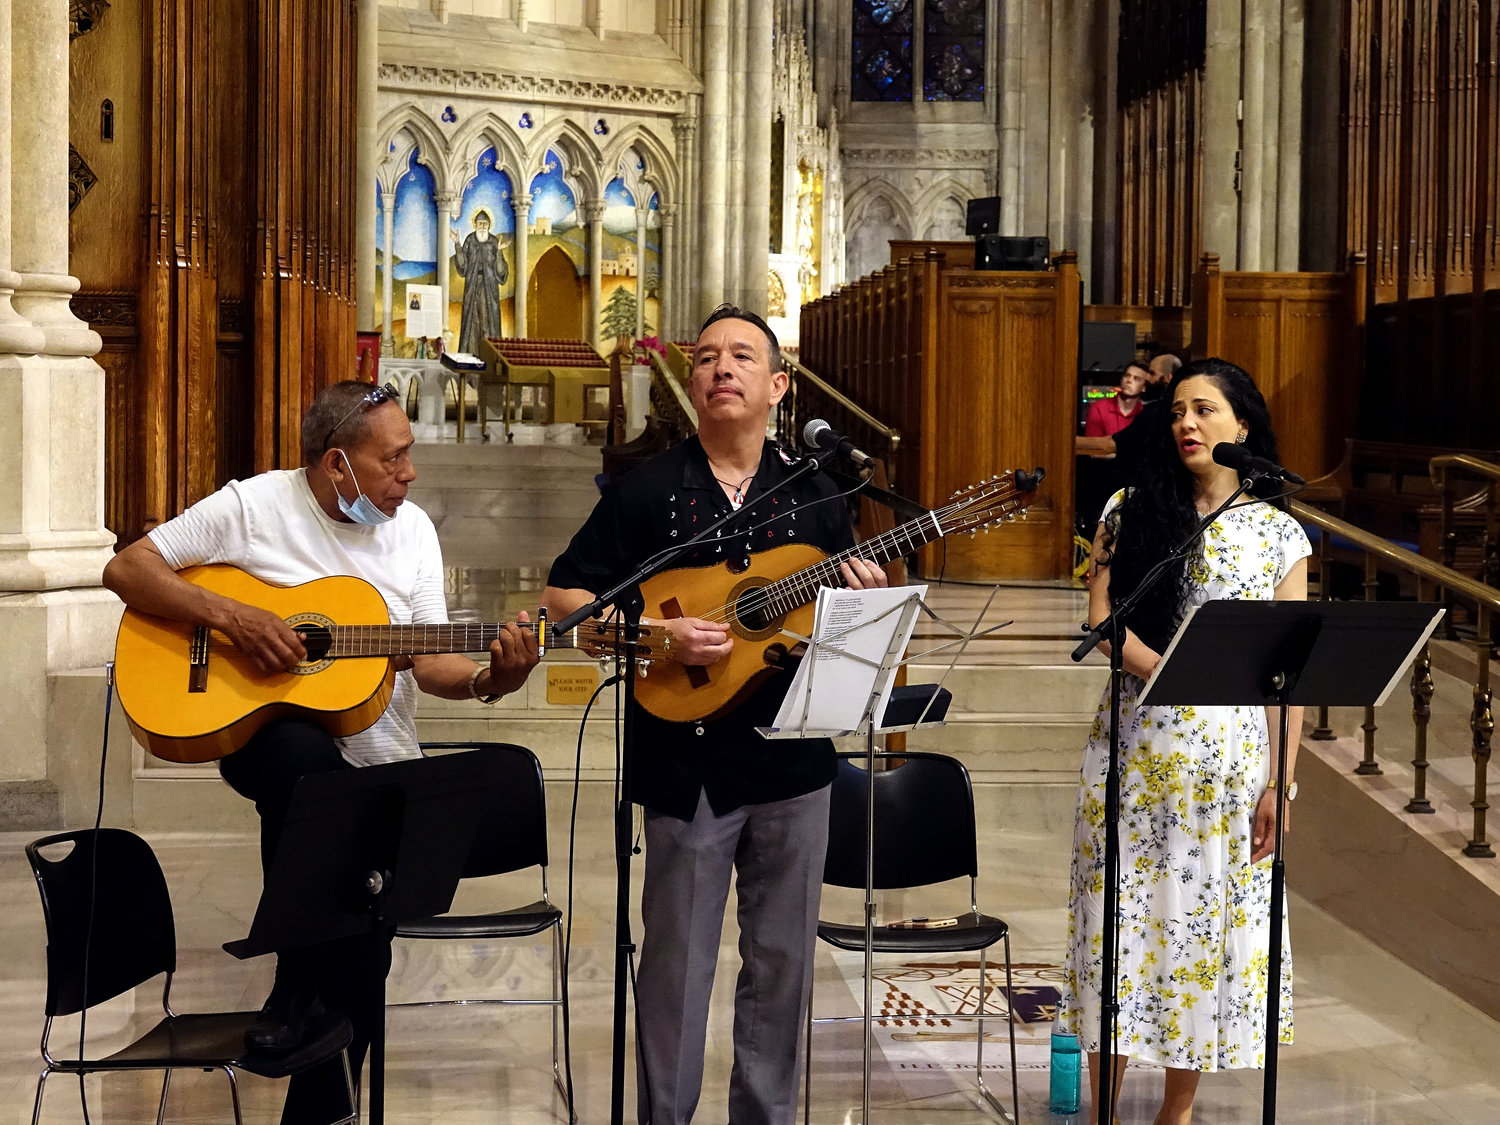 EN CANCIÓN—Miembros del coro proporcionan música el 6 de junio durante la misa del Día Nacional Puertorriqueño en la Catedral de San Patricio. Los miembros incluyeron a Samalie Alicea, a la derecha, quien cantó el Ave María.